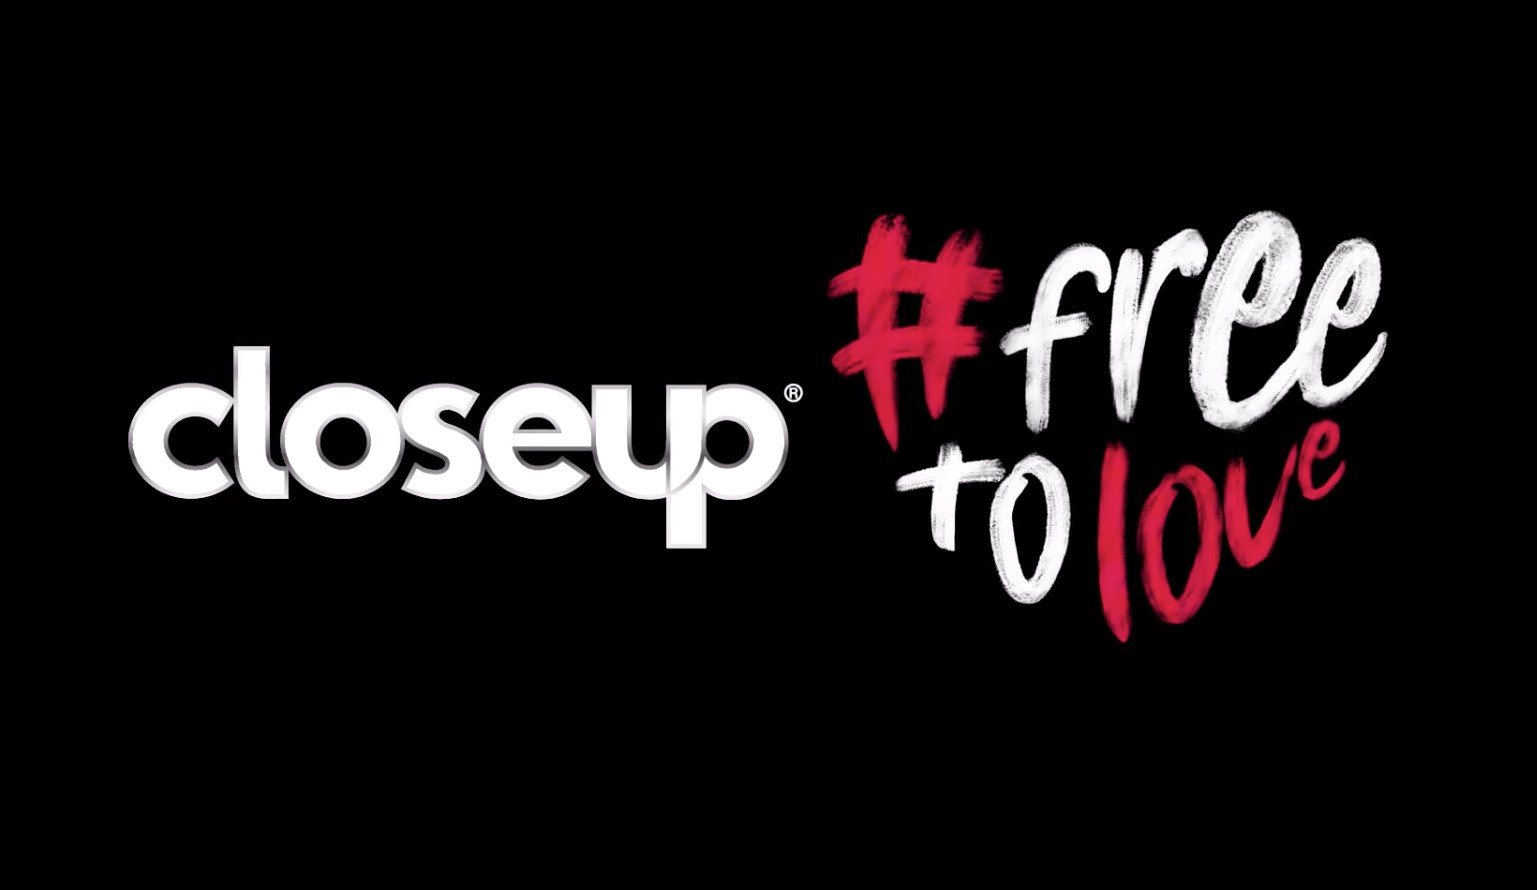 Closeup Free To Love | #FreeToLove